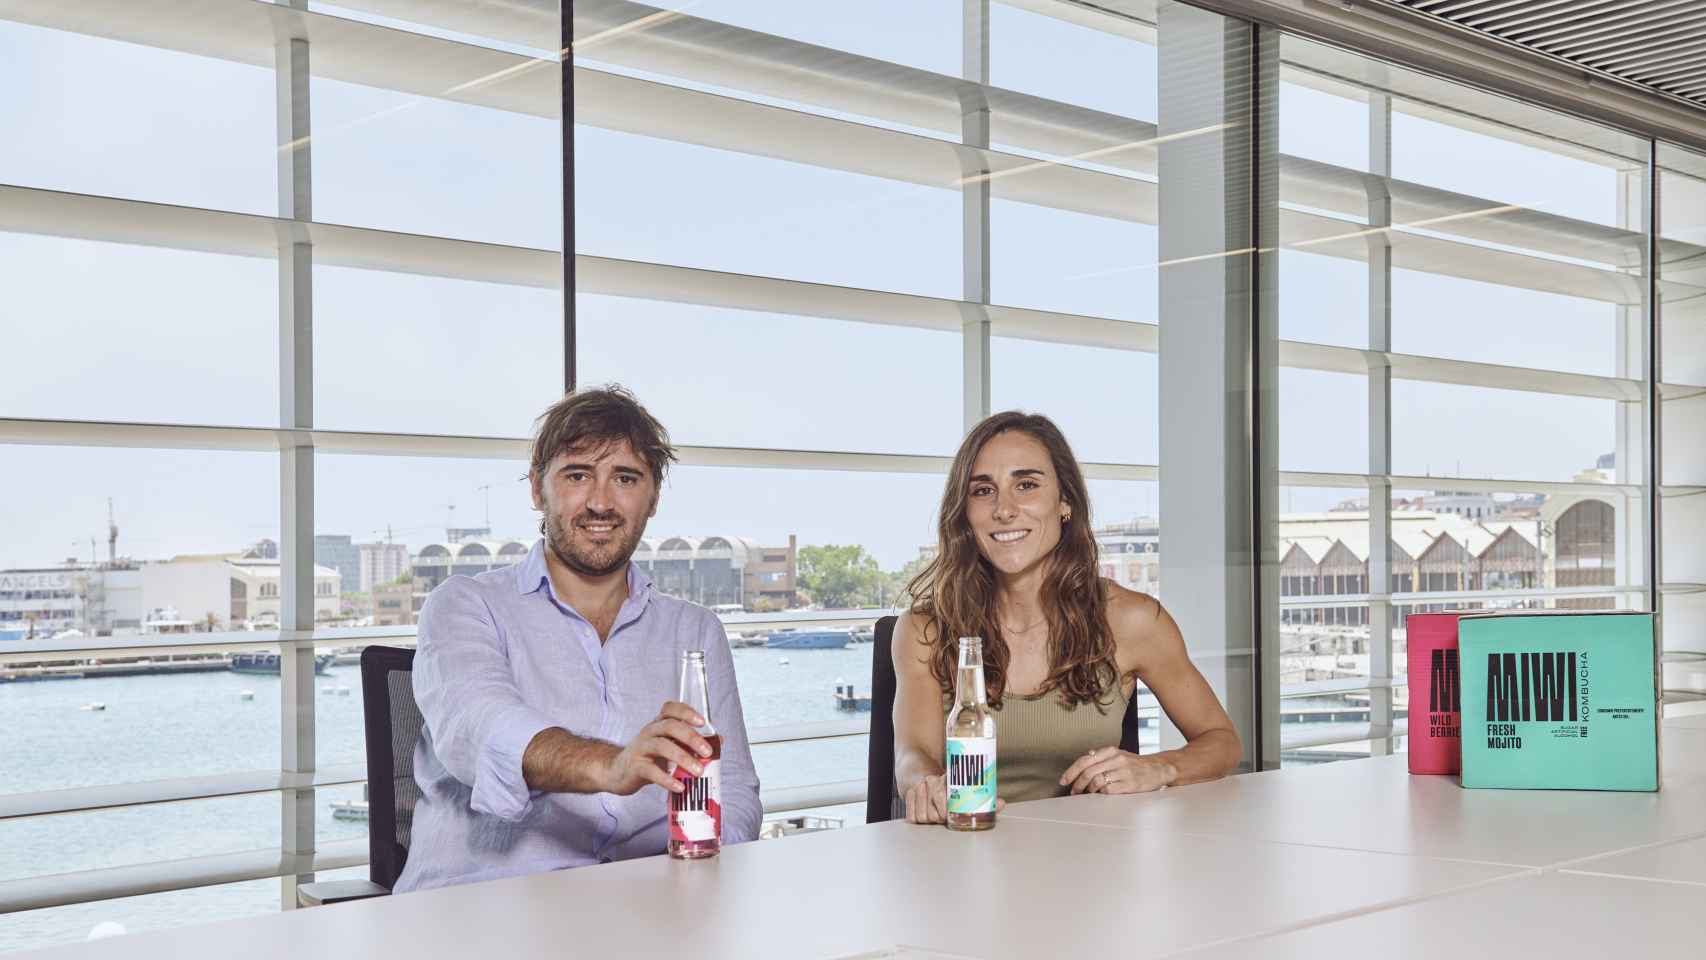 Iñigo Aguirrezabal y Laura Pérez, fundadores de MIWI Real Drinks.